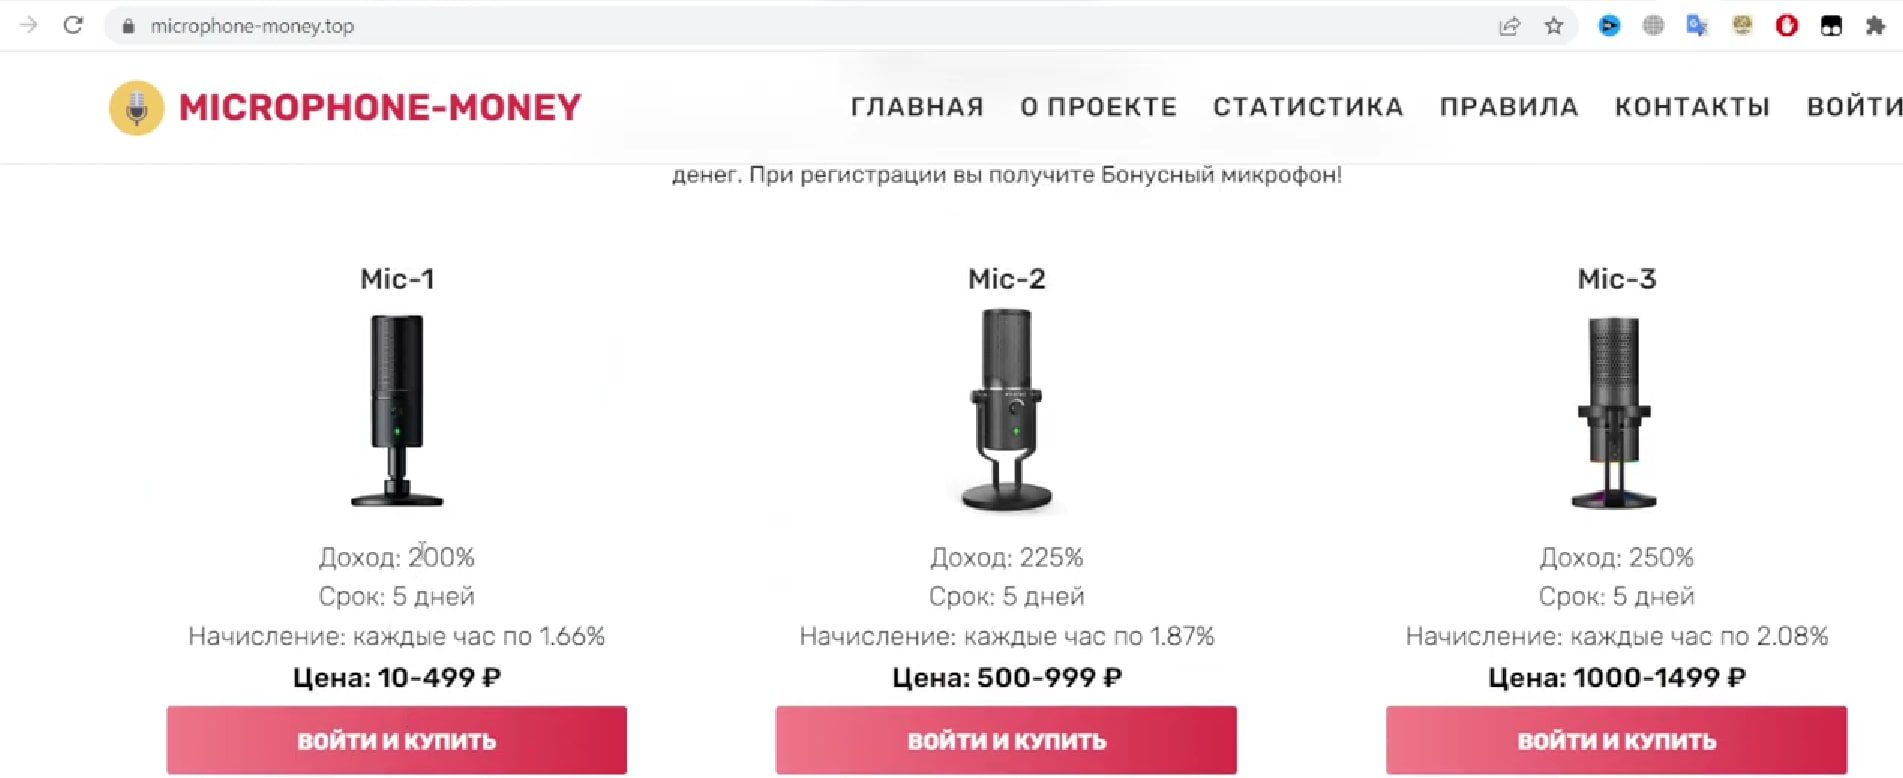 Microphone money цены